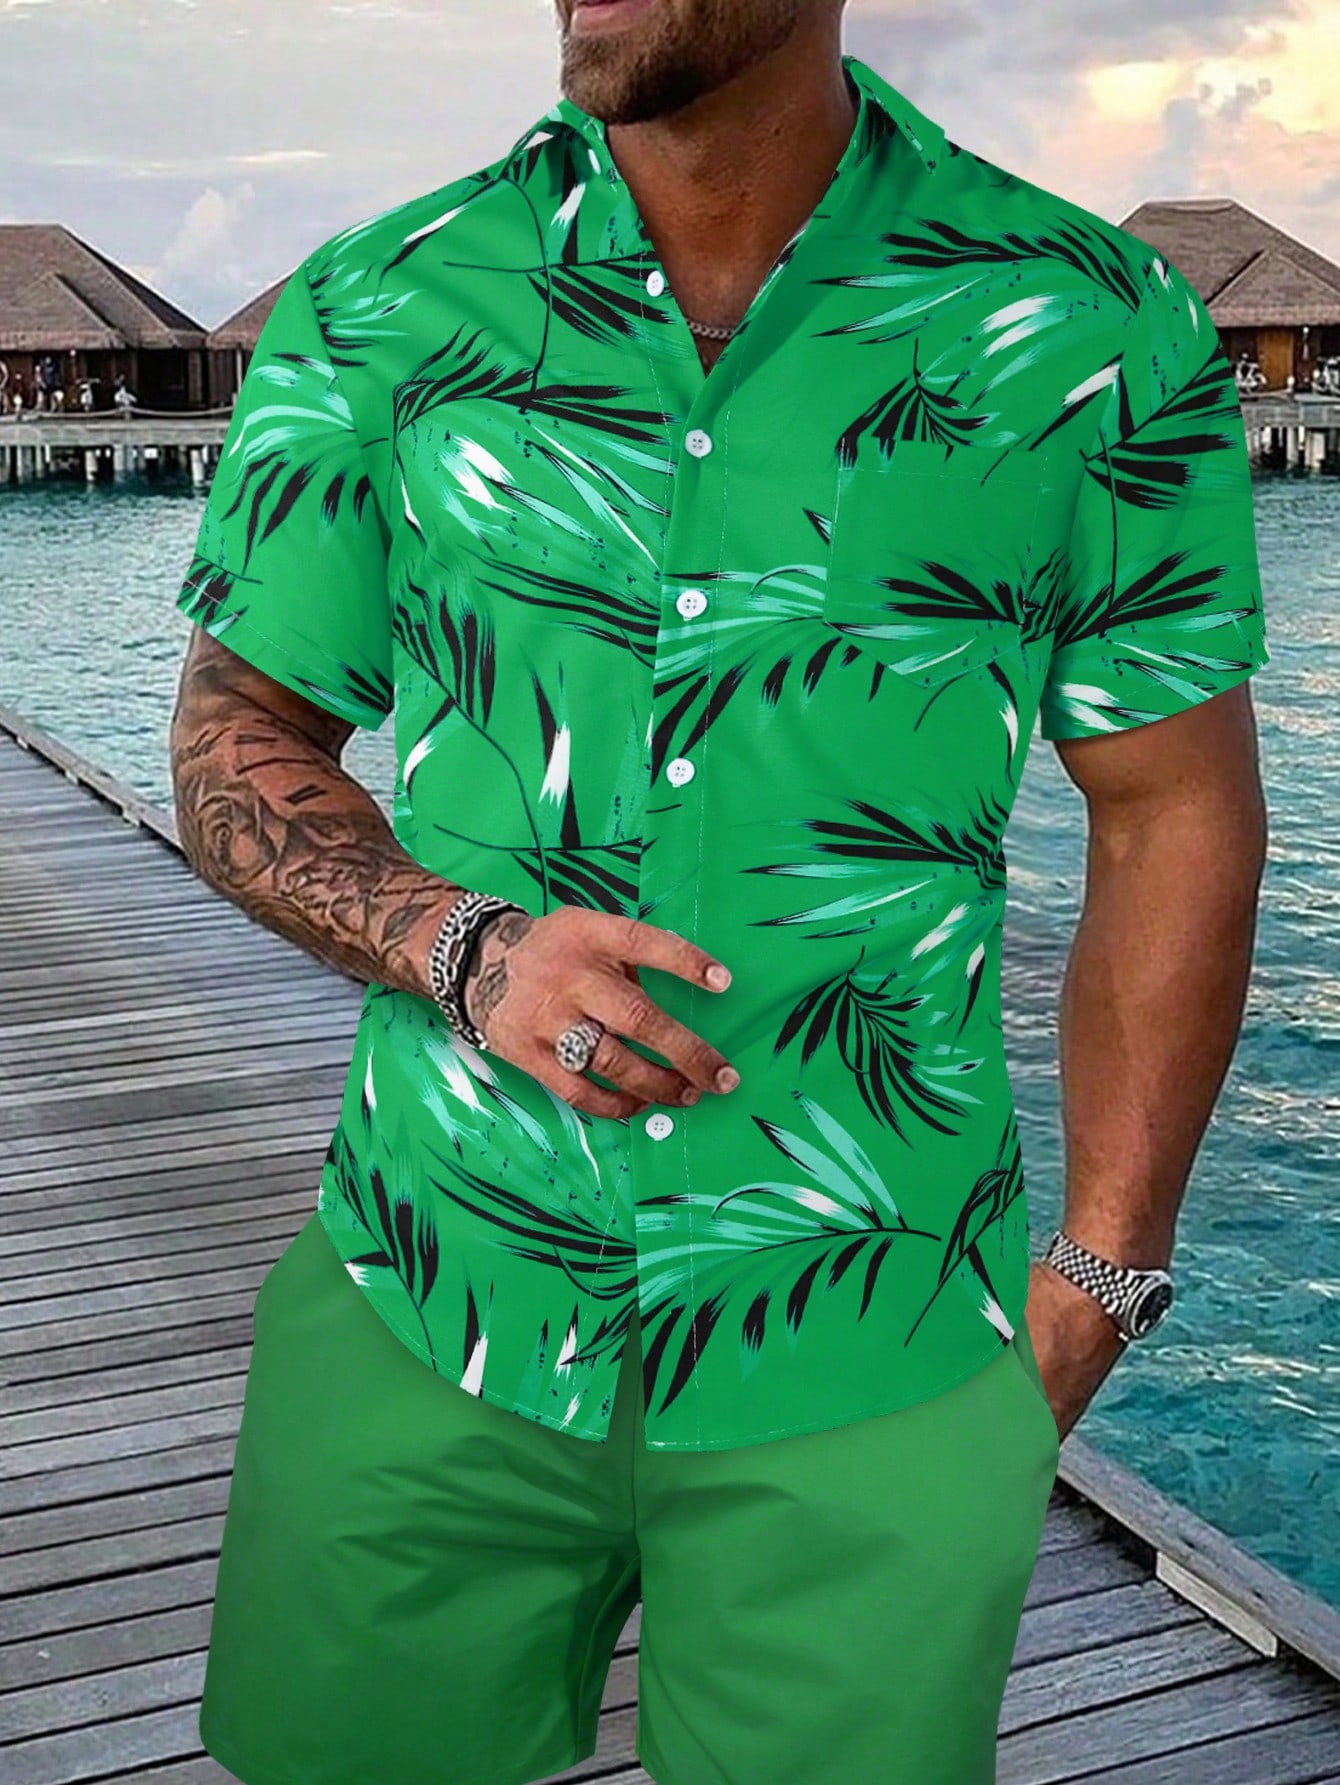 Мужская рубашка с короткими рукавами и принтом листьев на пуговицах Manfinity RSRT, зеленый